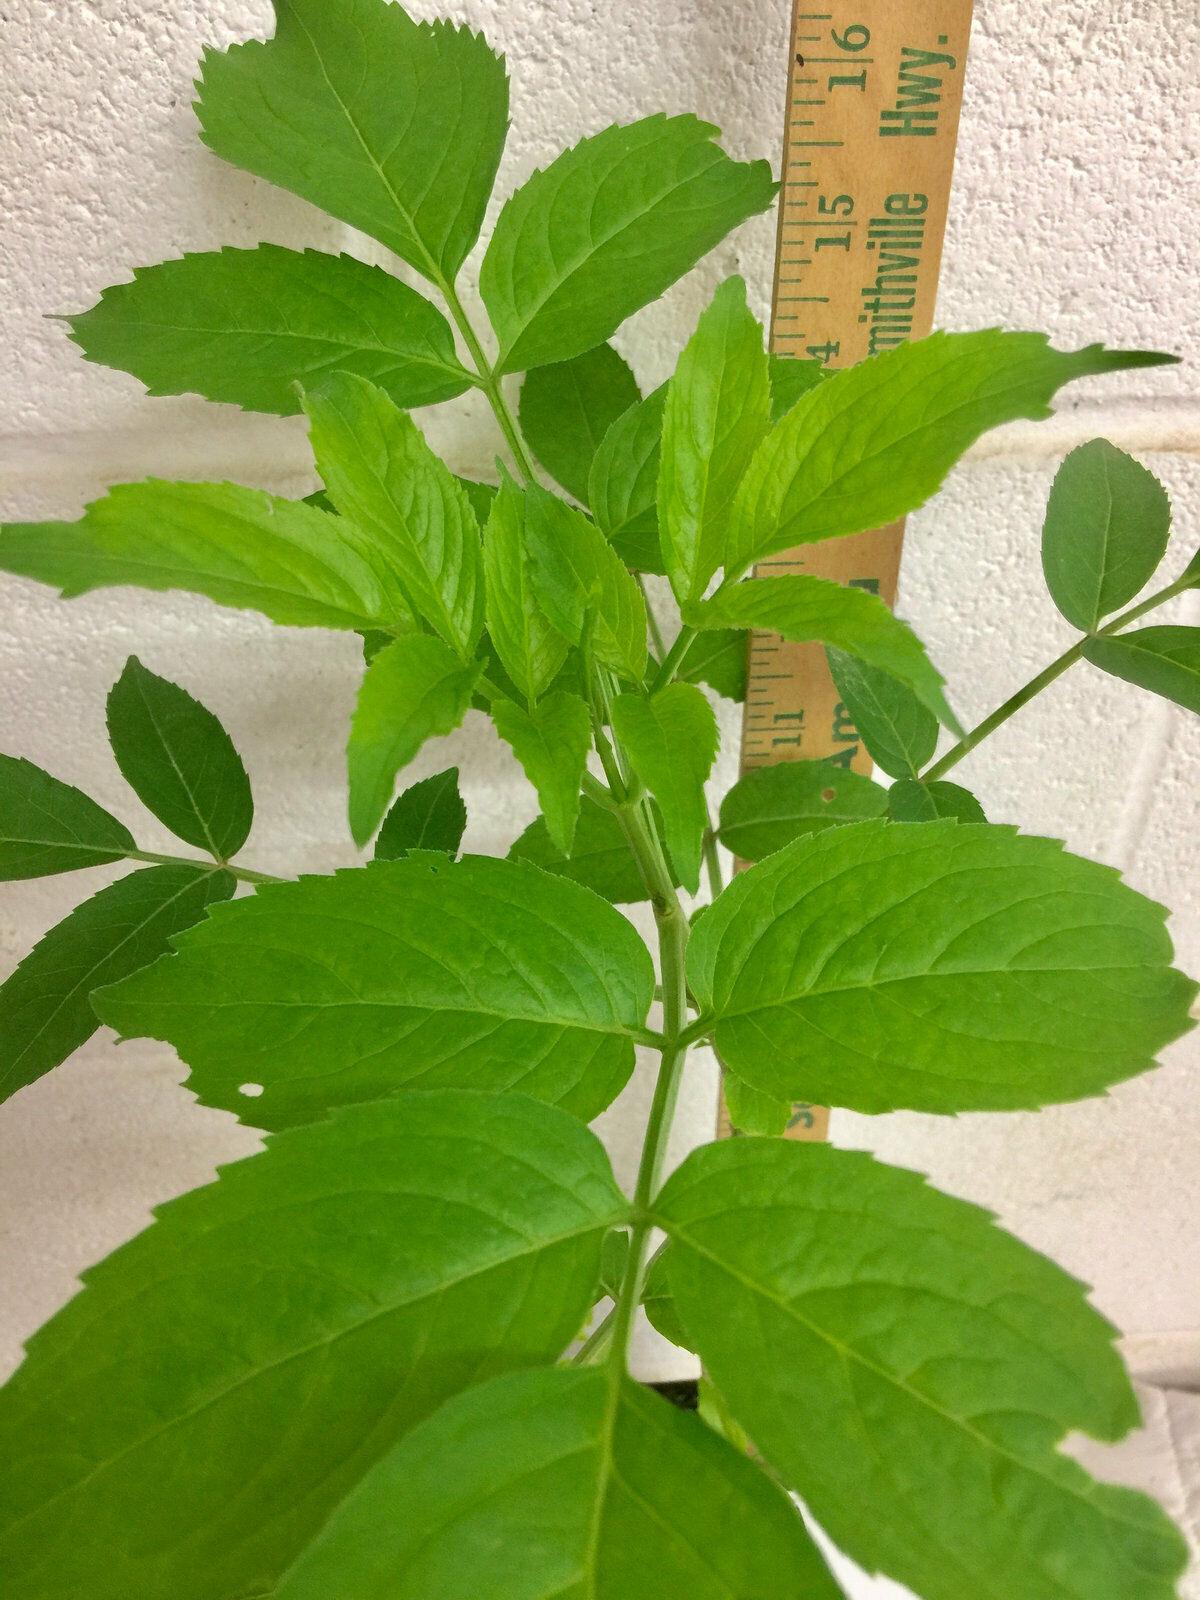 American Elderberry Shrub - 12" Tall Live Plant, Quart Pot - Sambucus canadensis - The Nursery Center